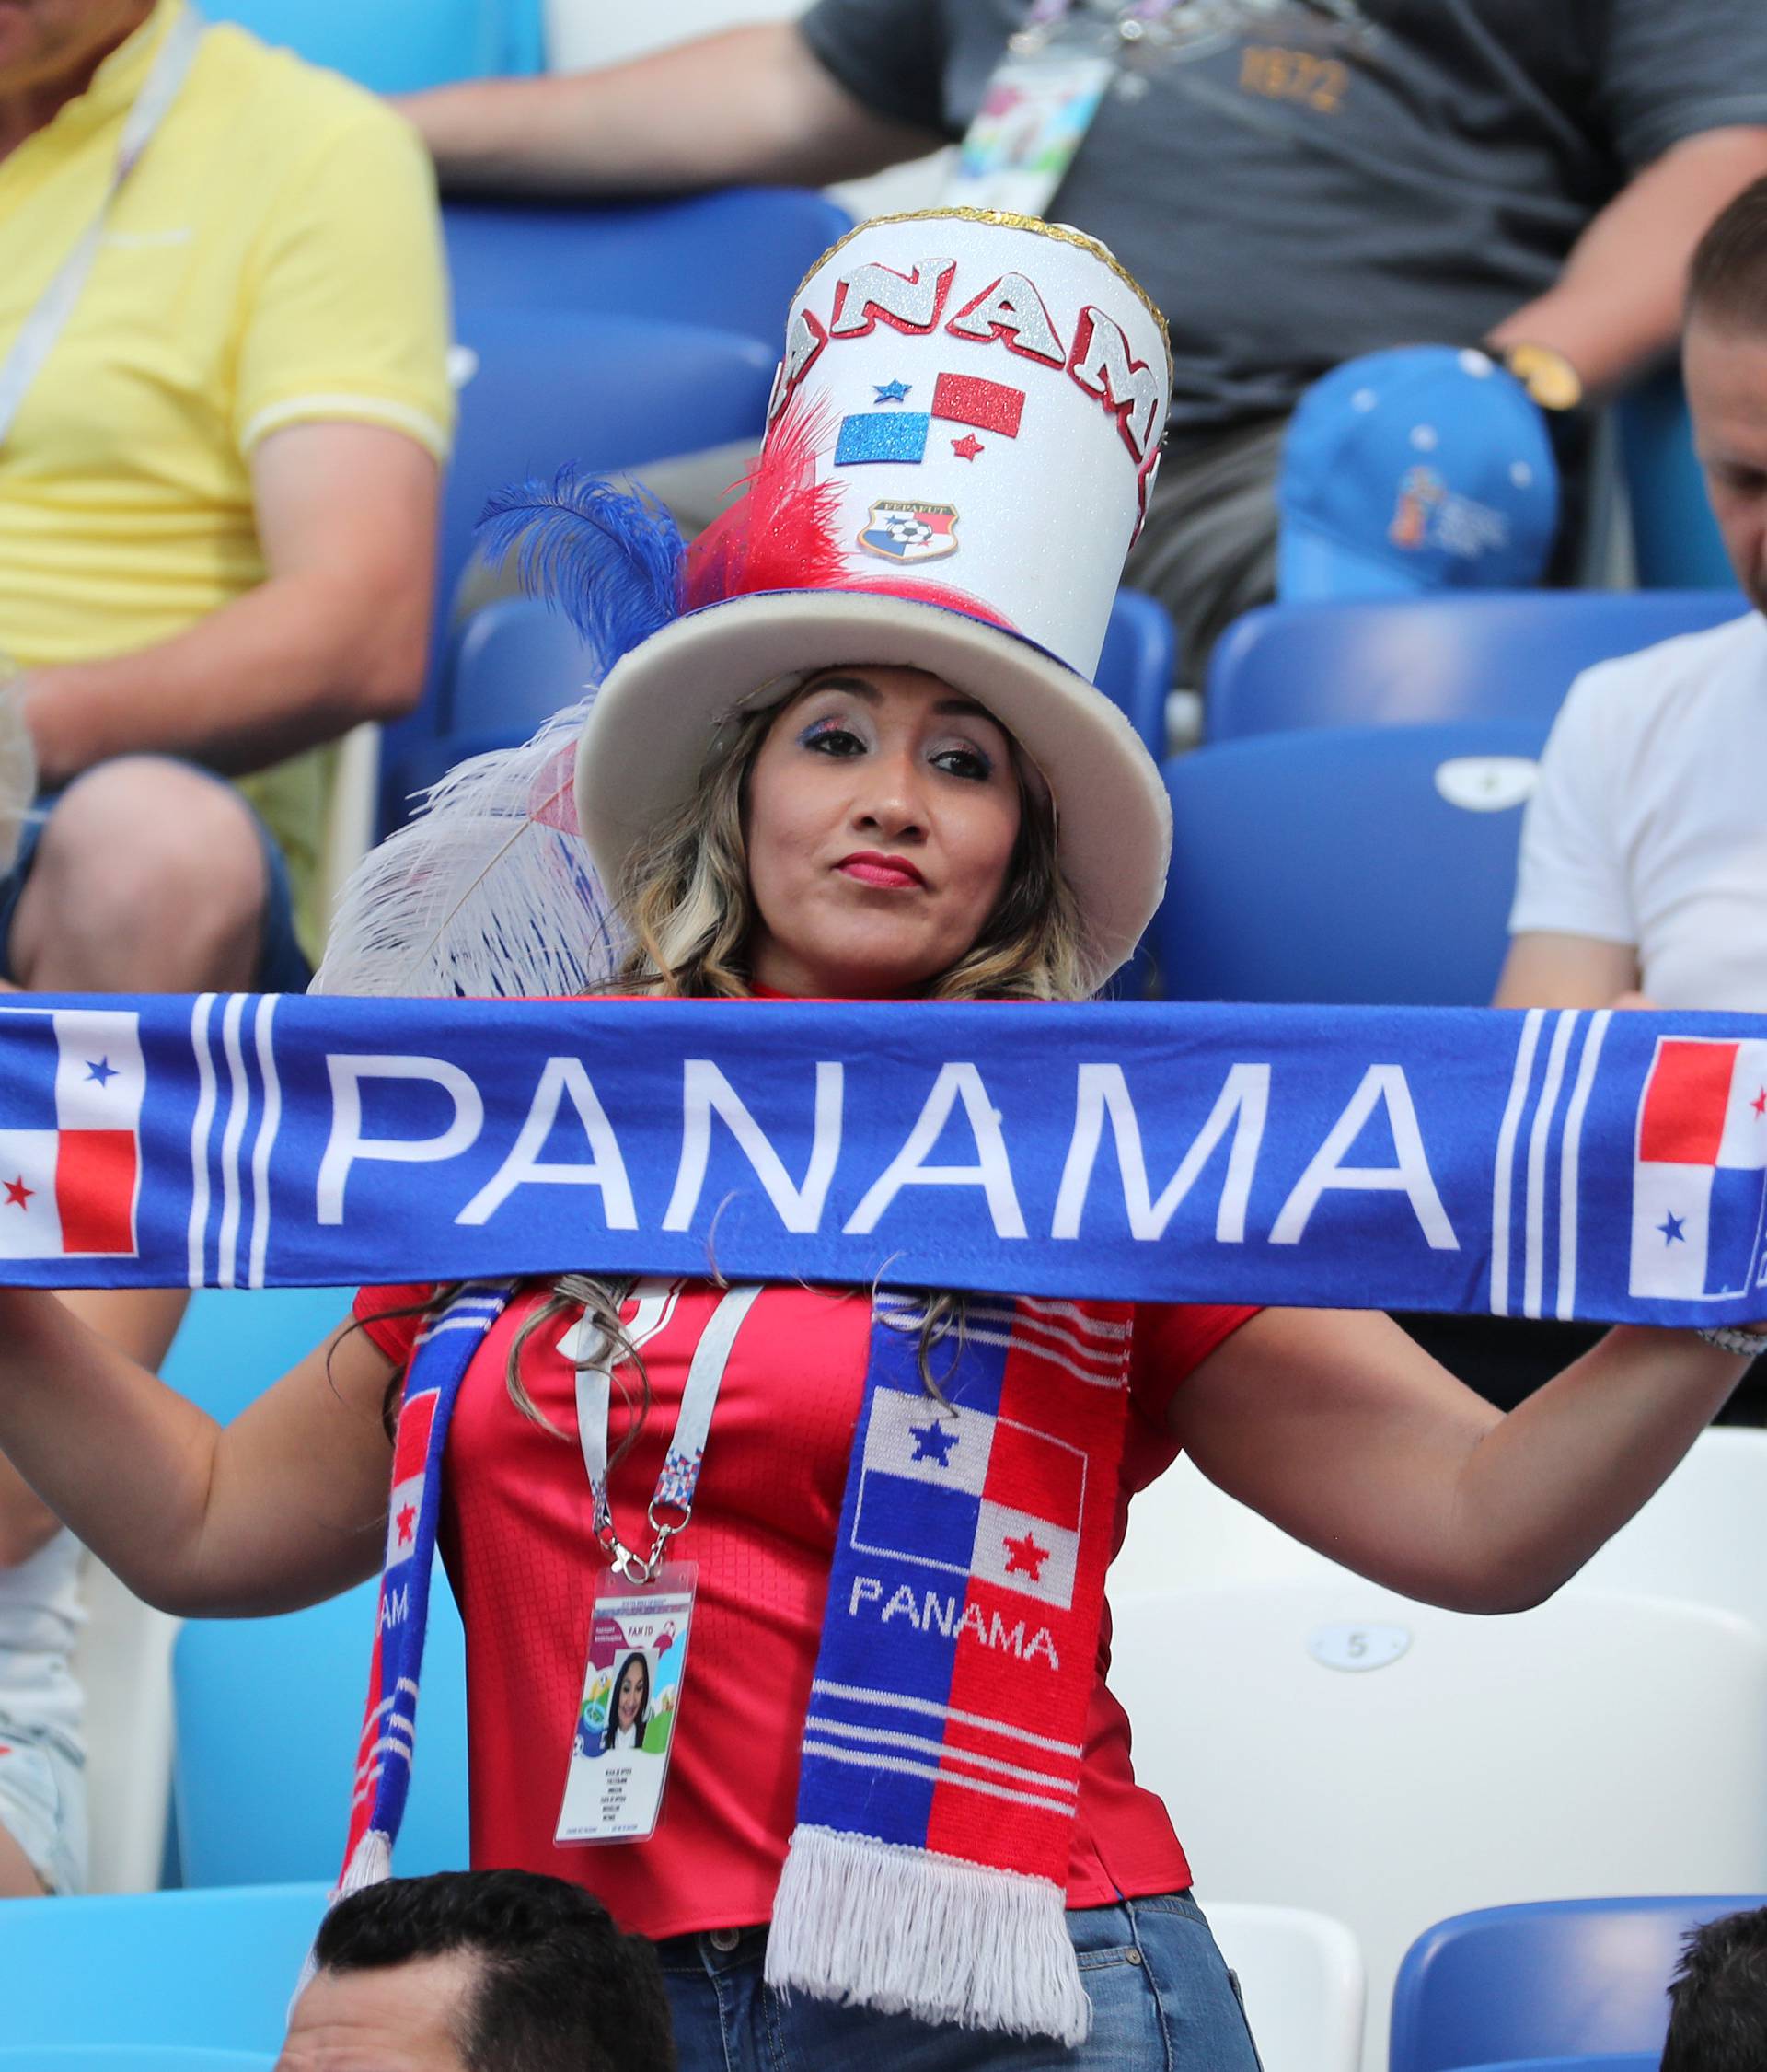 World Cup - Group G - England vs Panama